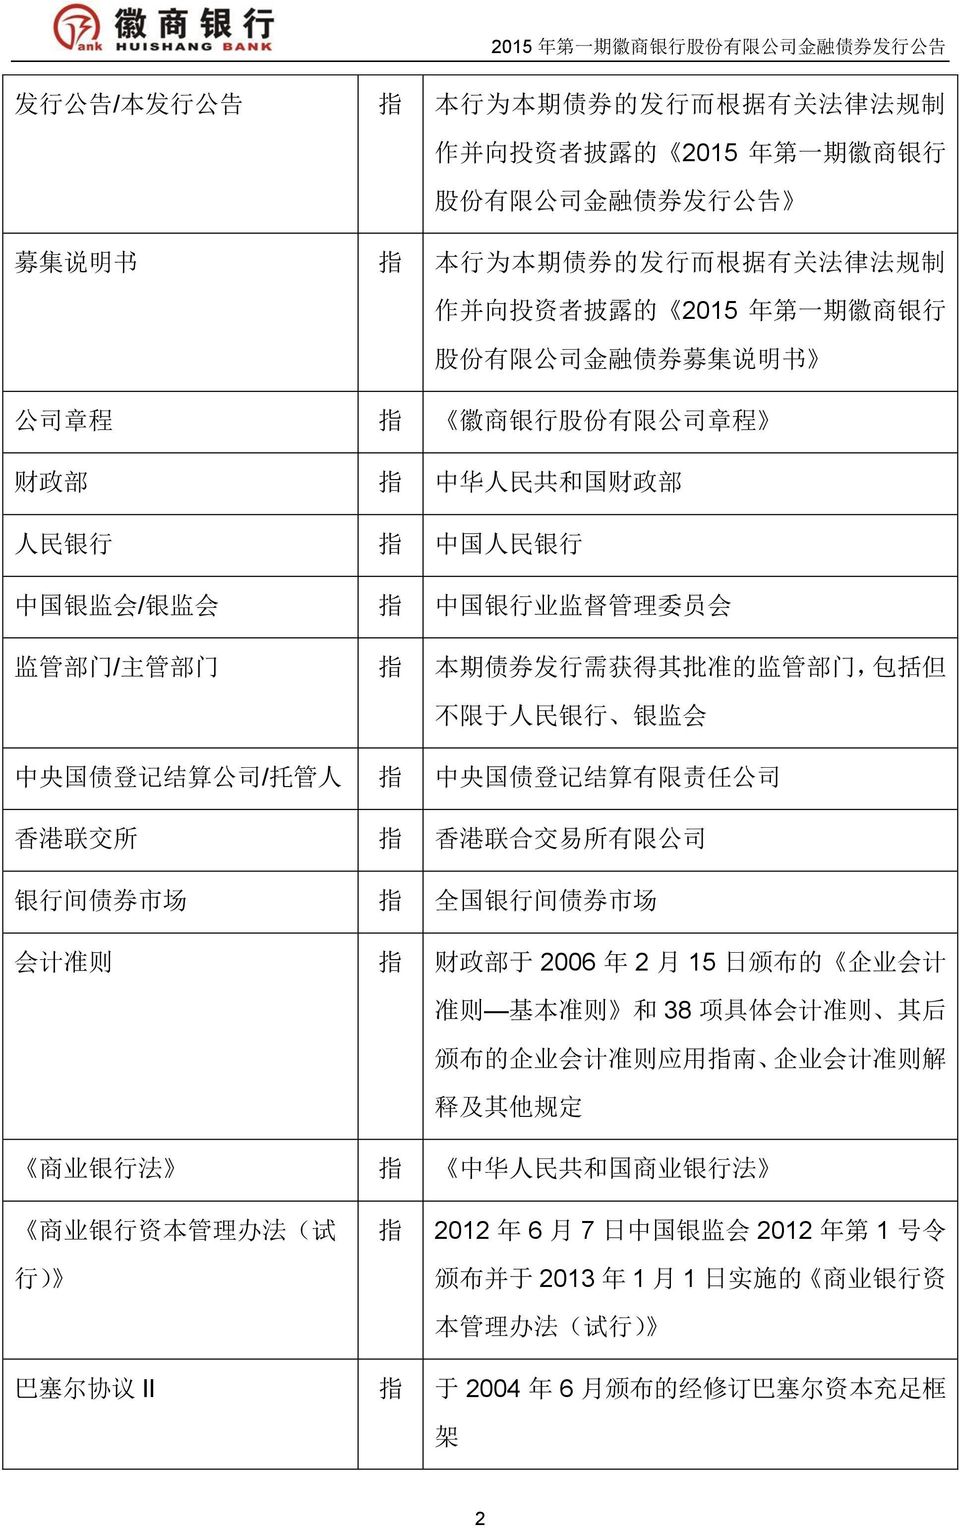 中央国债登记结算有限责任公司 香港联交所 指 香港联合交易所有限公司 银行间债券市场 指 全国银行间债券市场 会计准则 指 财政部于 2006 年 2 月 15 日颁布的 企业会计准则 基本准则 和 38 项具体会计准则 其后颁布的企业会计准则应用指南 企业会计准则解释及其他规定